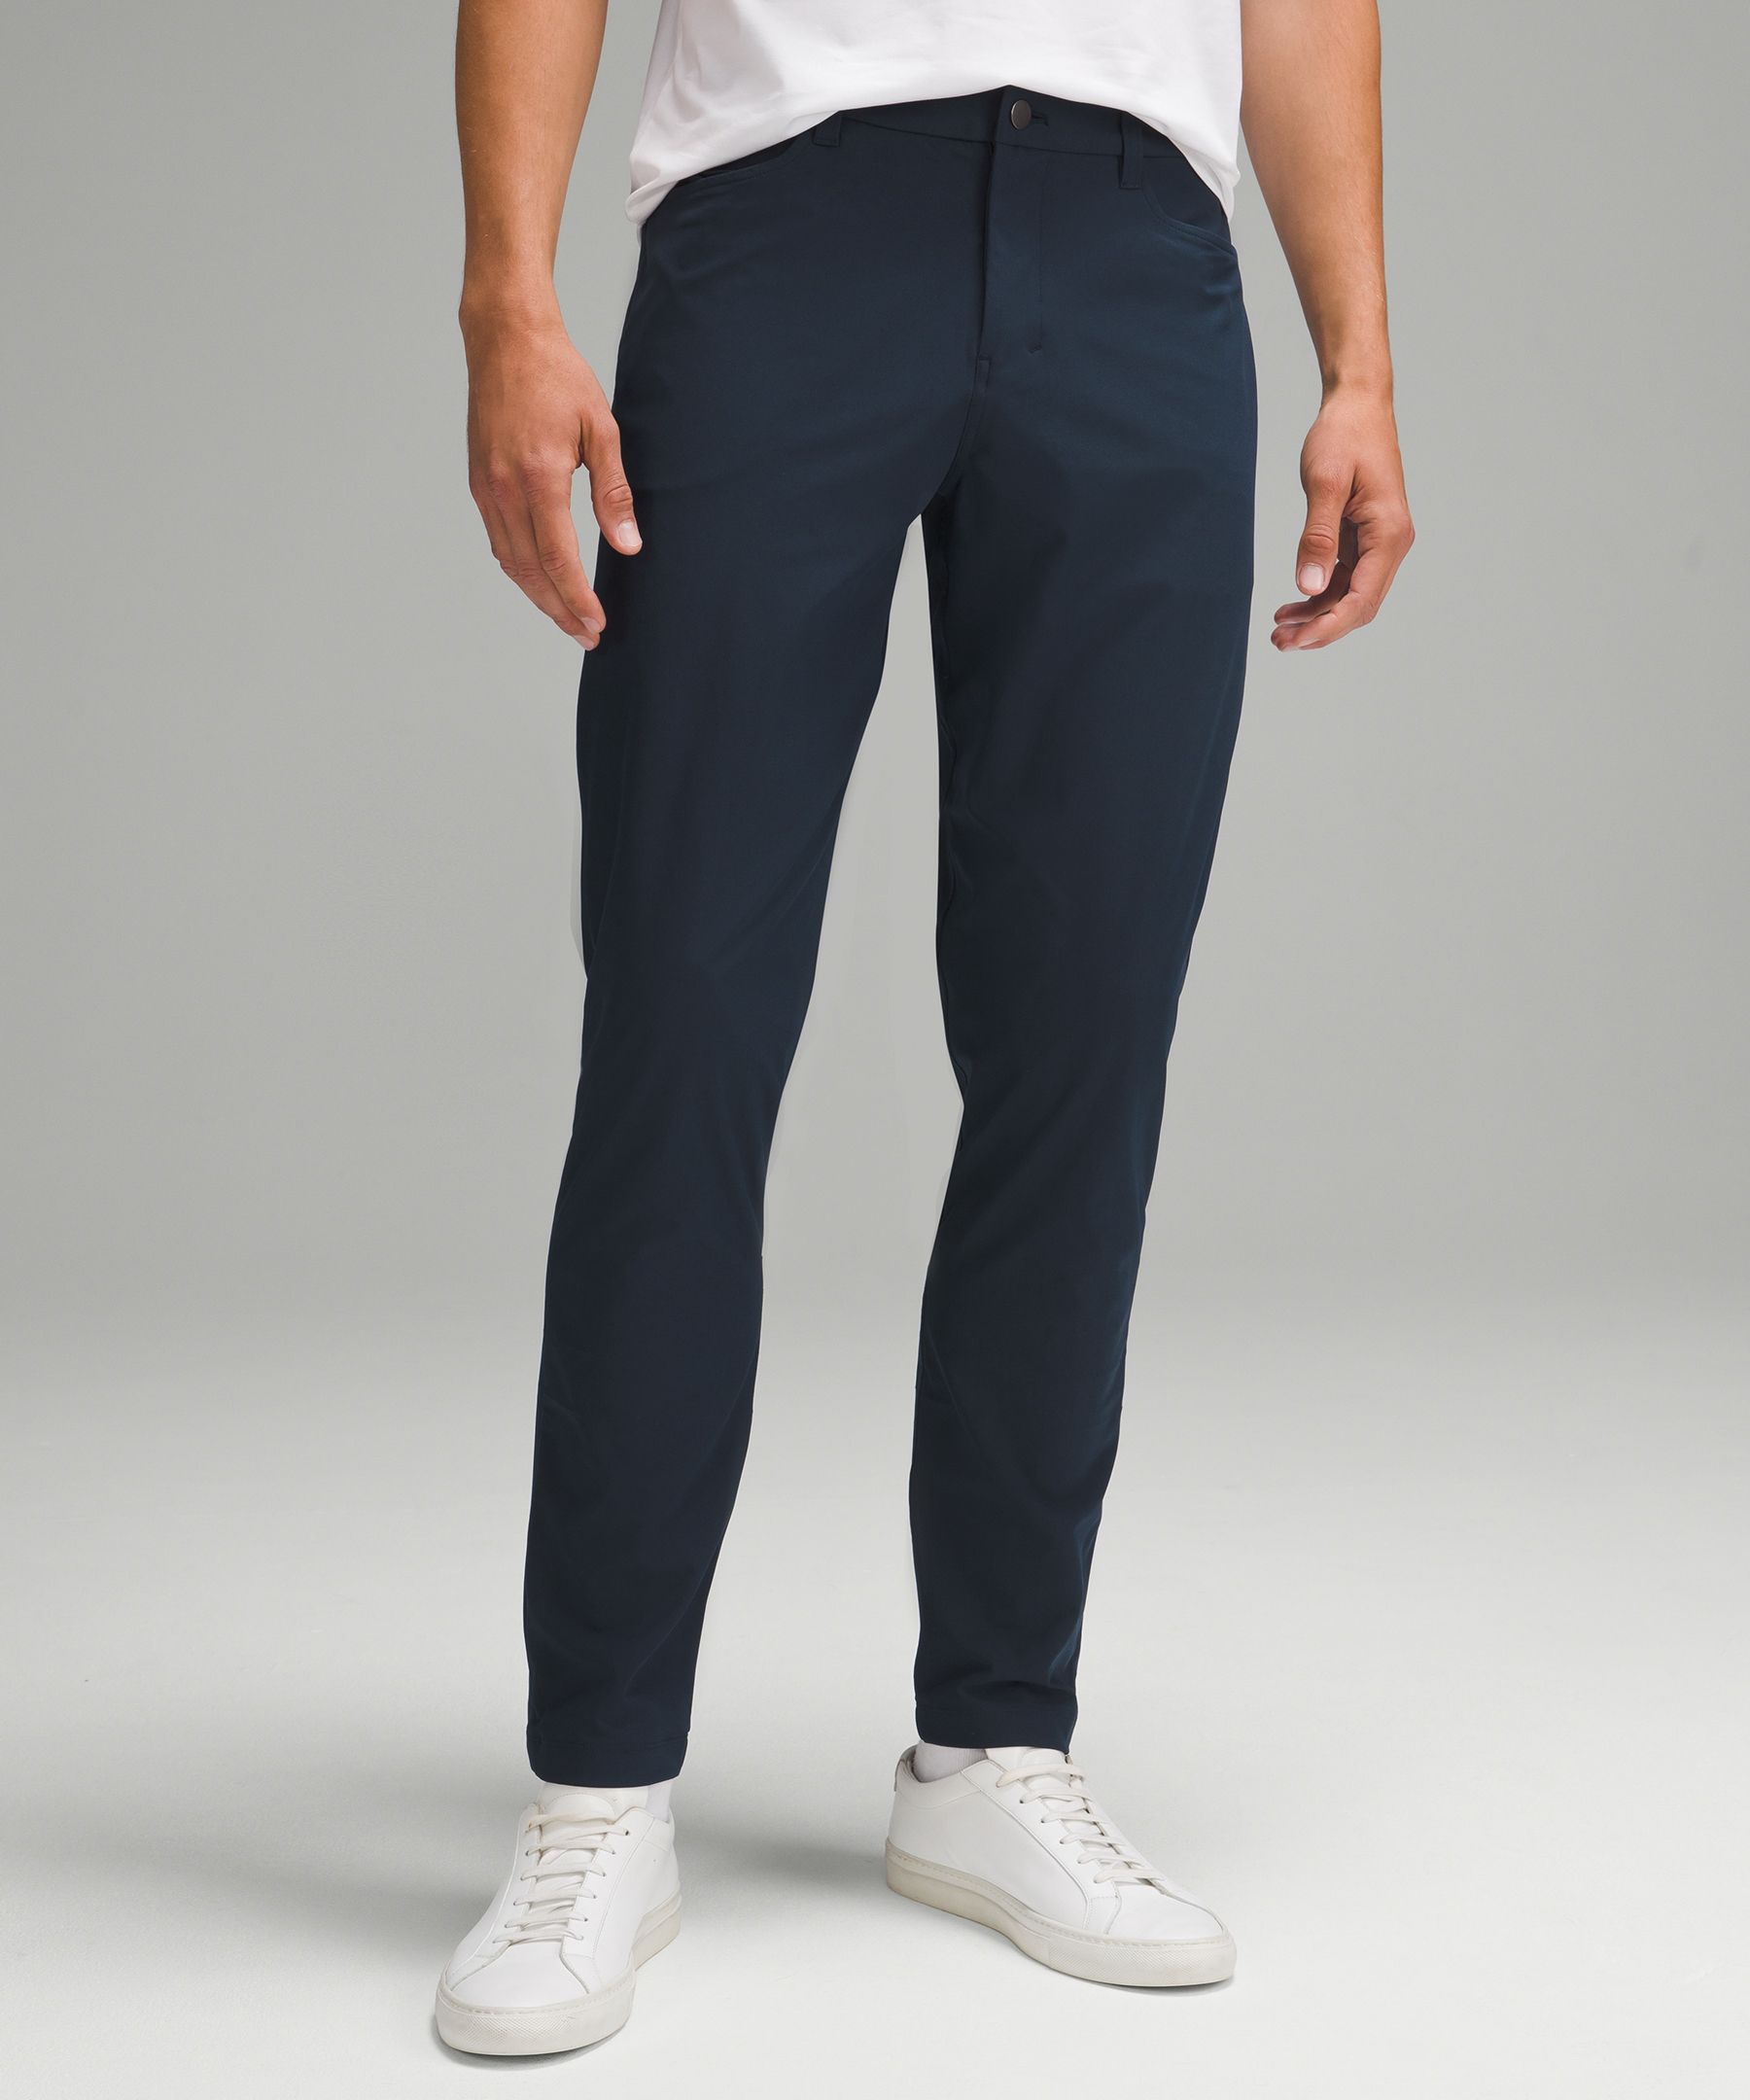 Lululemon athletica ABC Slim-Fit 5 Pocket Pant 28 *Warpstreme, Men's  Trousers